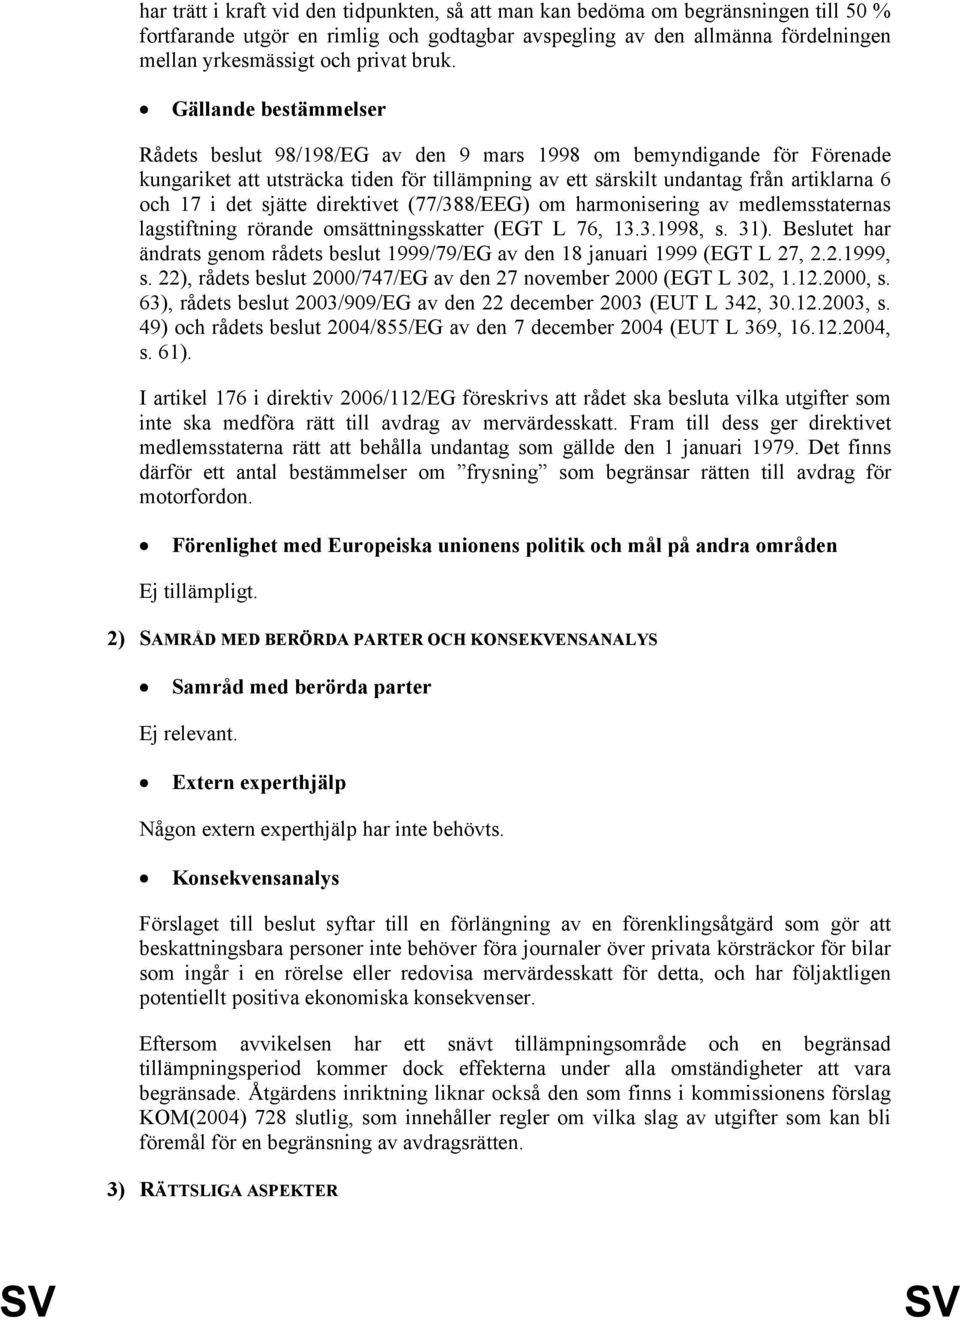 17 i det sjätte direktivet (77/388/EEG) om harmonisering av medlemsstaternas lagstiftning rörande omsättningsskatter (EGT L 76, 13.3.1998, s. 31).